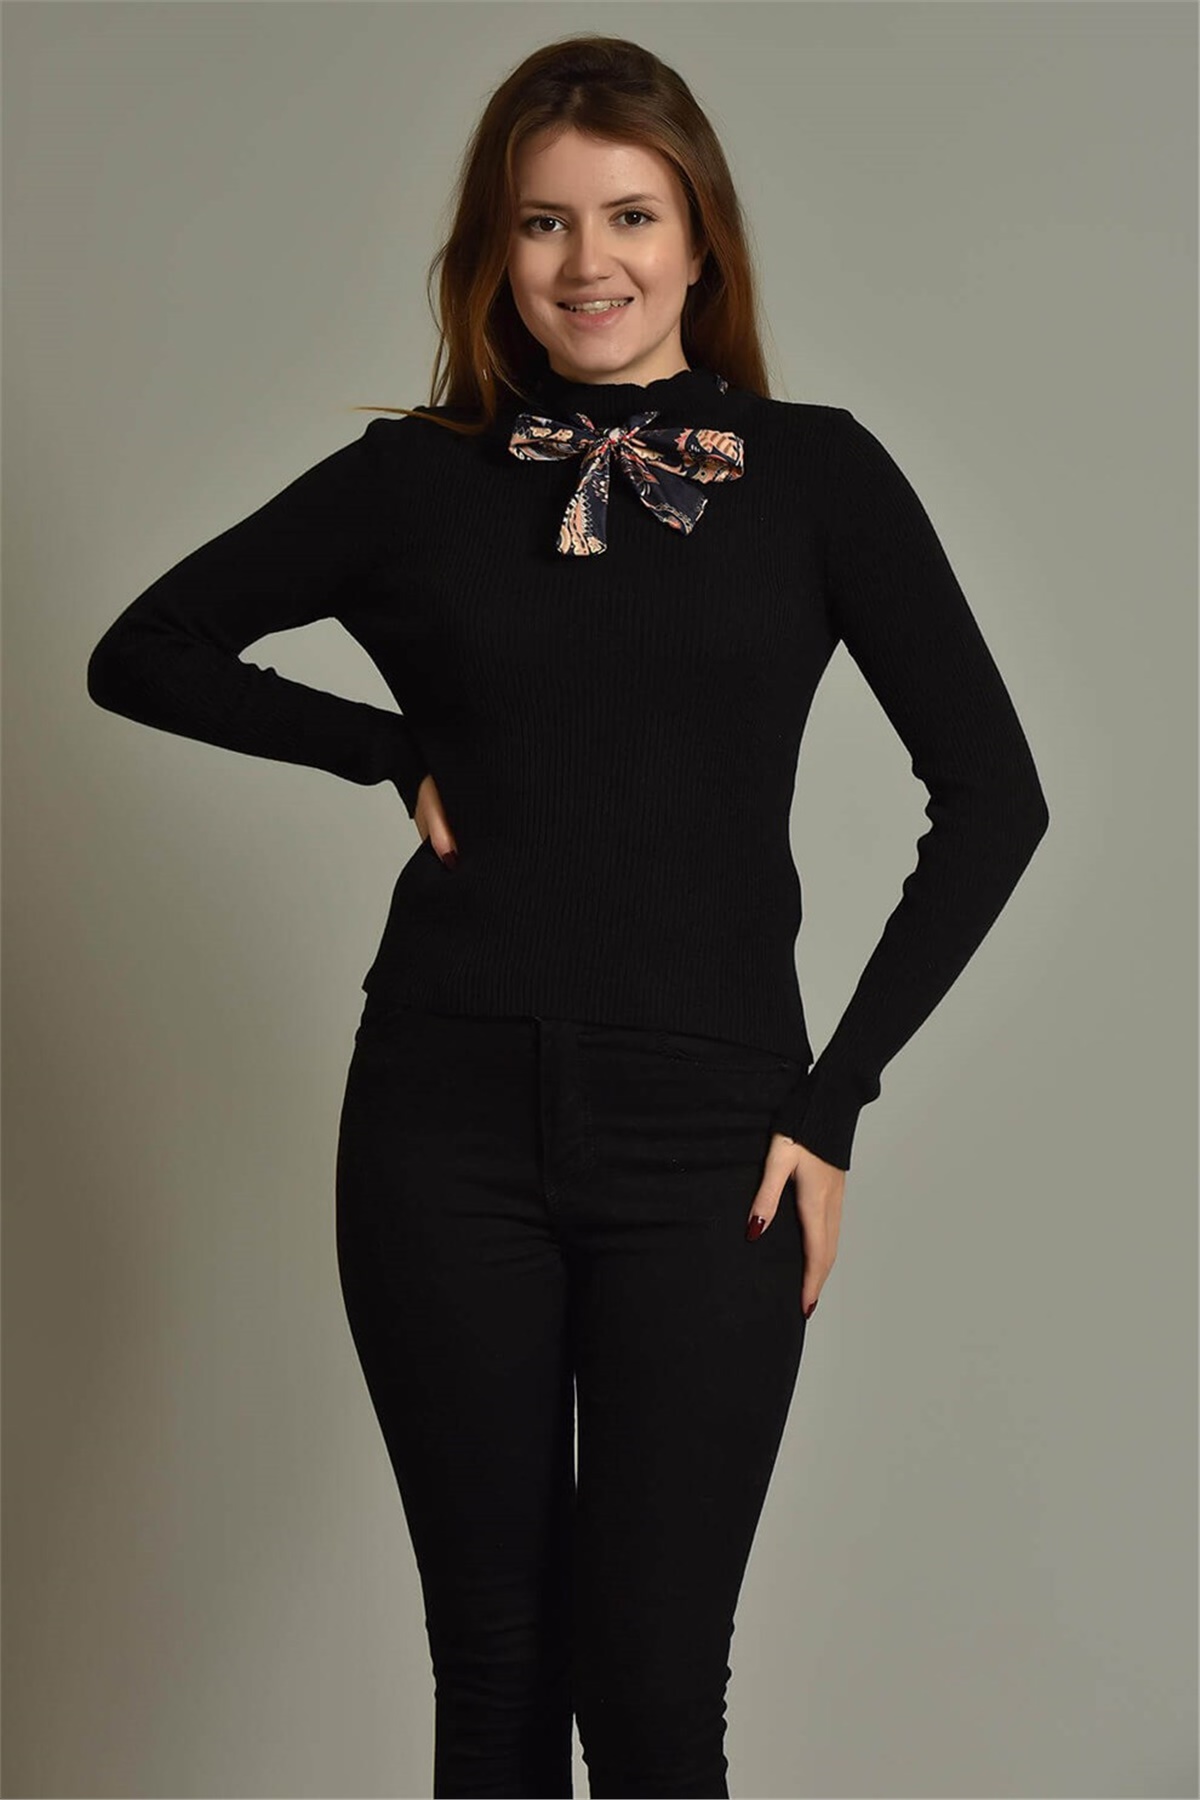 Siyah Yakası Fular Detay Triko Kazak - Moda Kapımda İle Kapınızda!